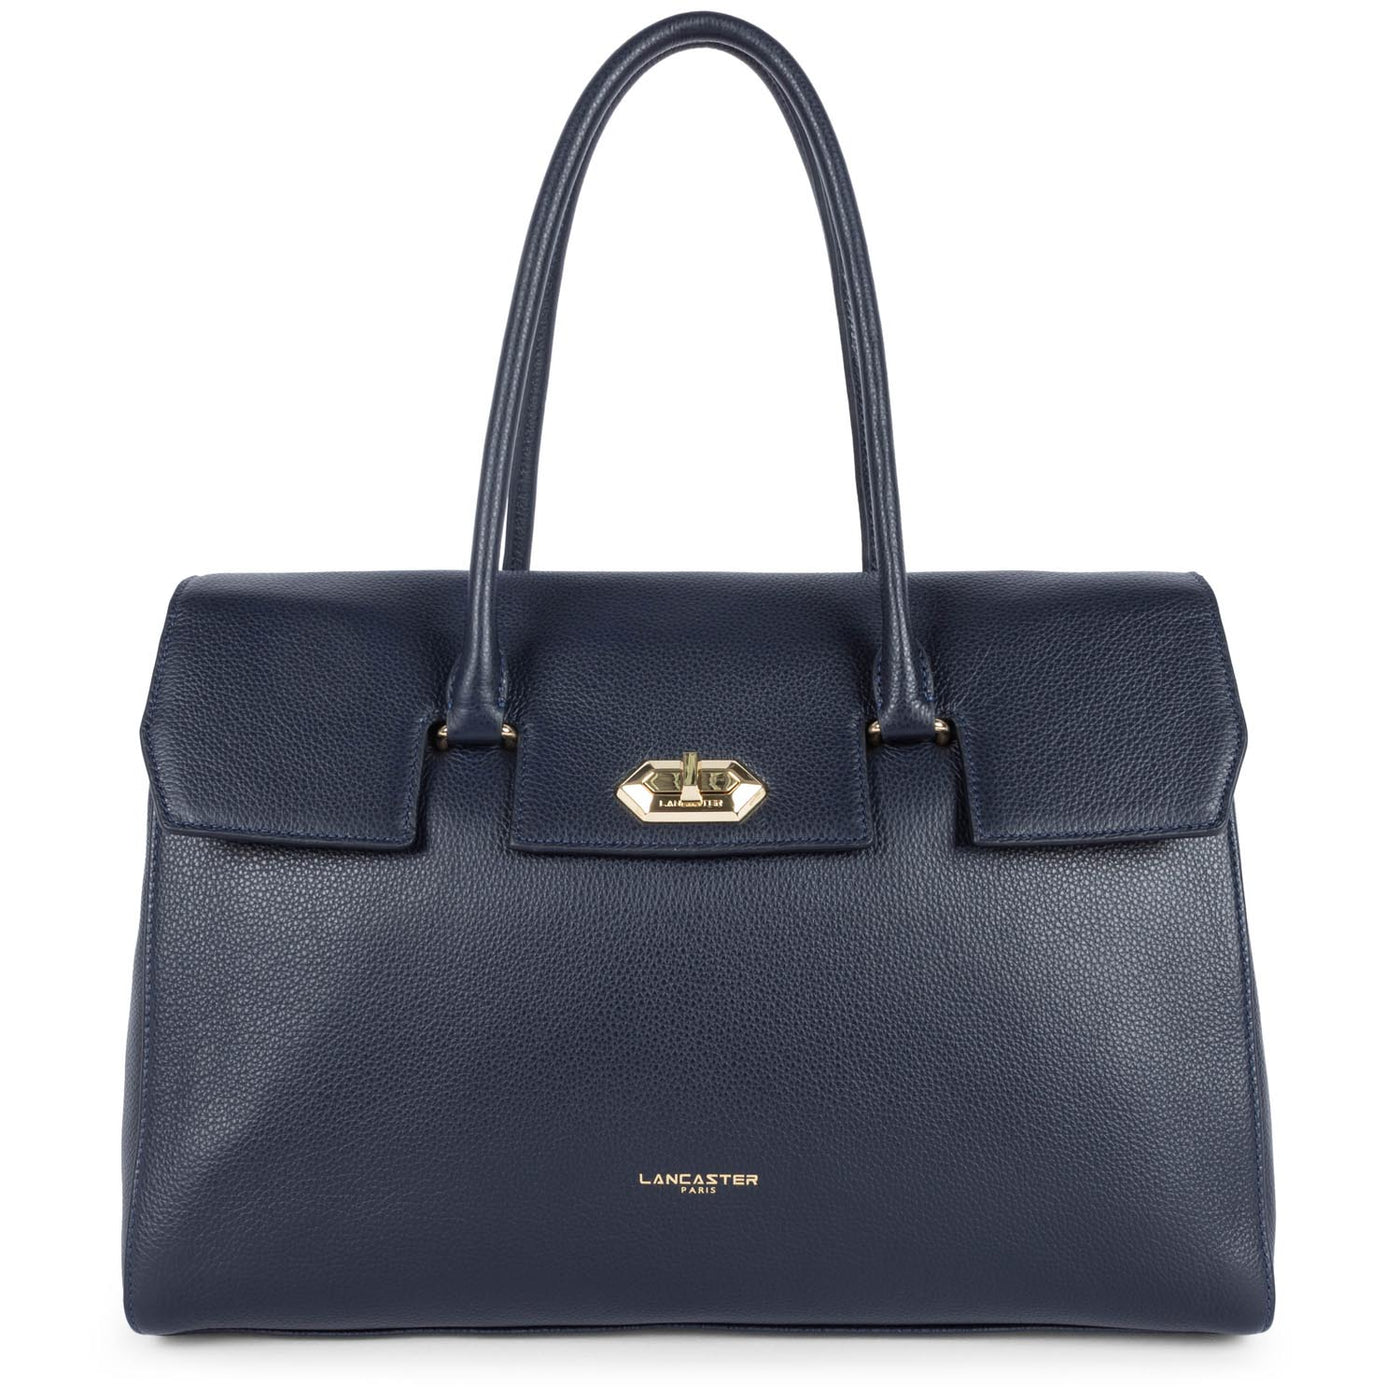 extra large tote bag - foulonné milano #couleur_bleu-fonc